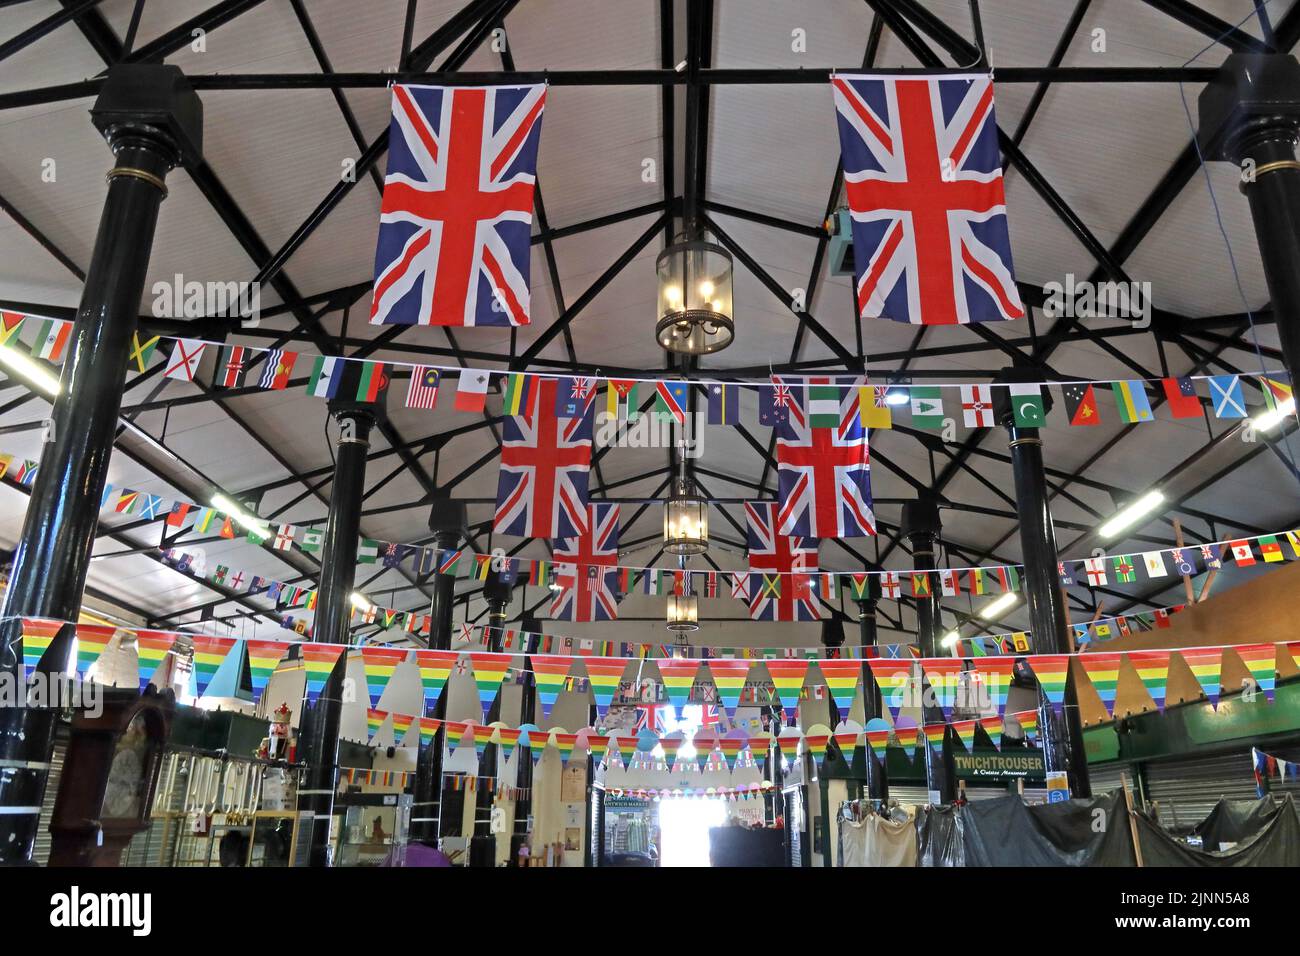 All'interno del mercato di Nantwich, Market Street, Nantwich, Cheshire, Inghilterra, UK, CW5 5DG, bandiere per il giubileo delle regine 2022 Foto Stock